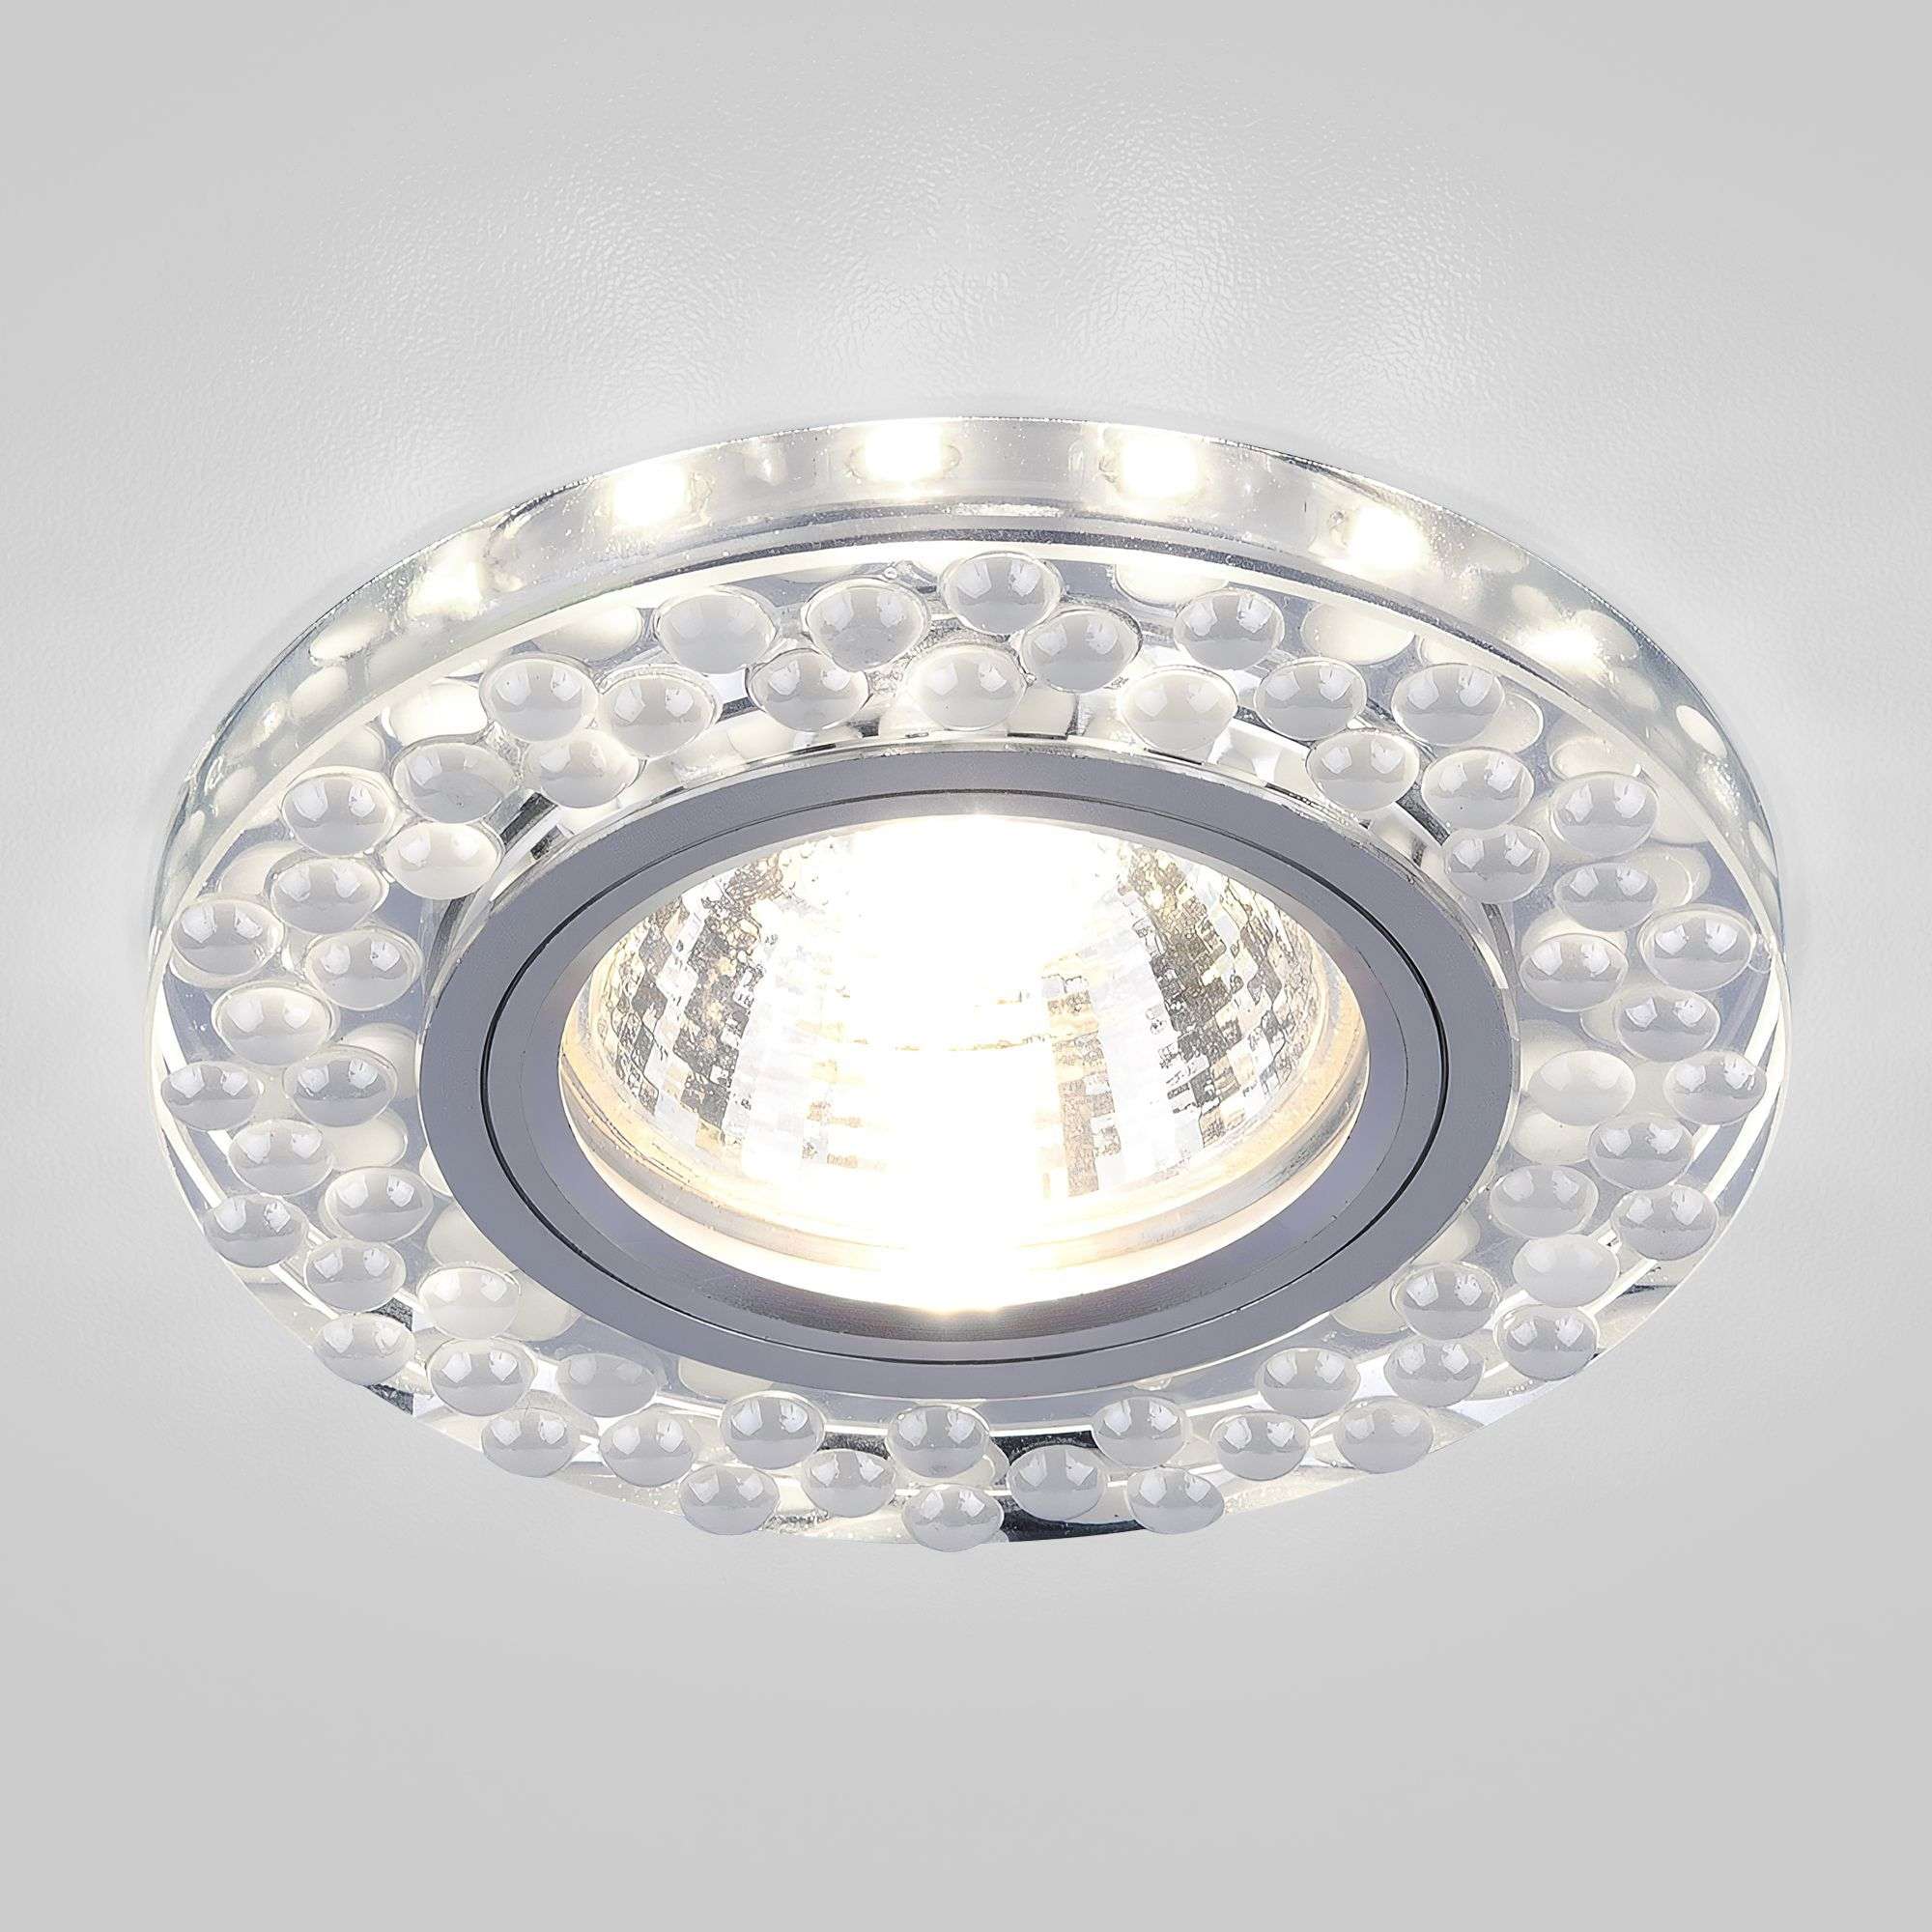 Точечный светильник с LED подсветкой 2194 MR16 SL/WH зеркальный/белый. Фото 1